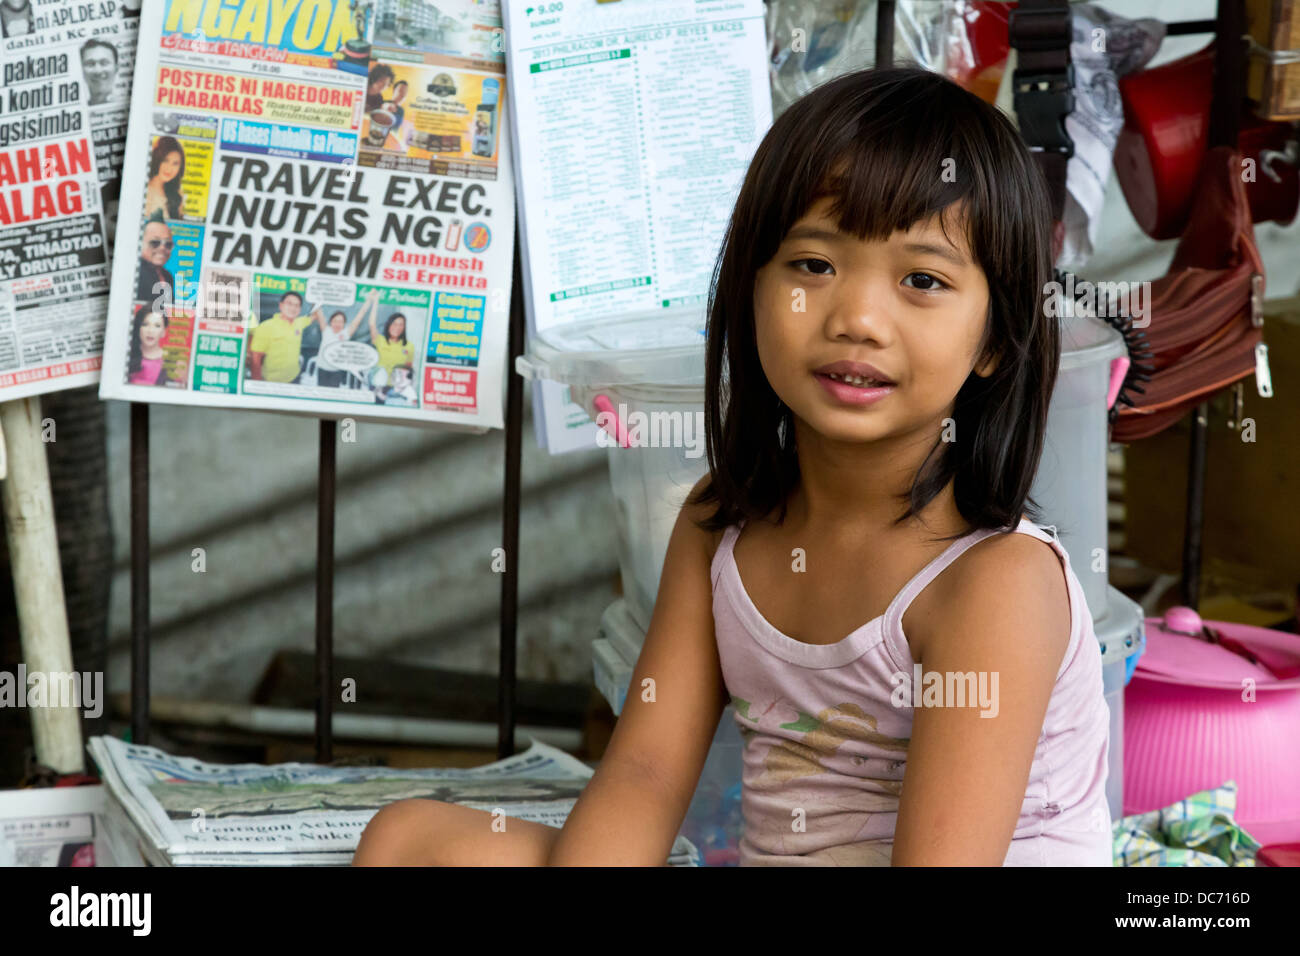 Petite fille à Manille, Philippines Banque D'Images